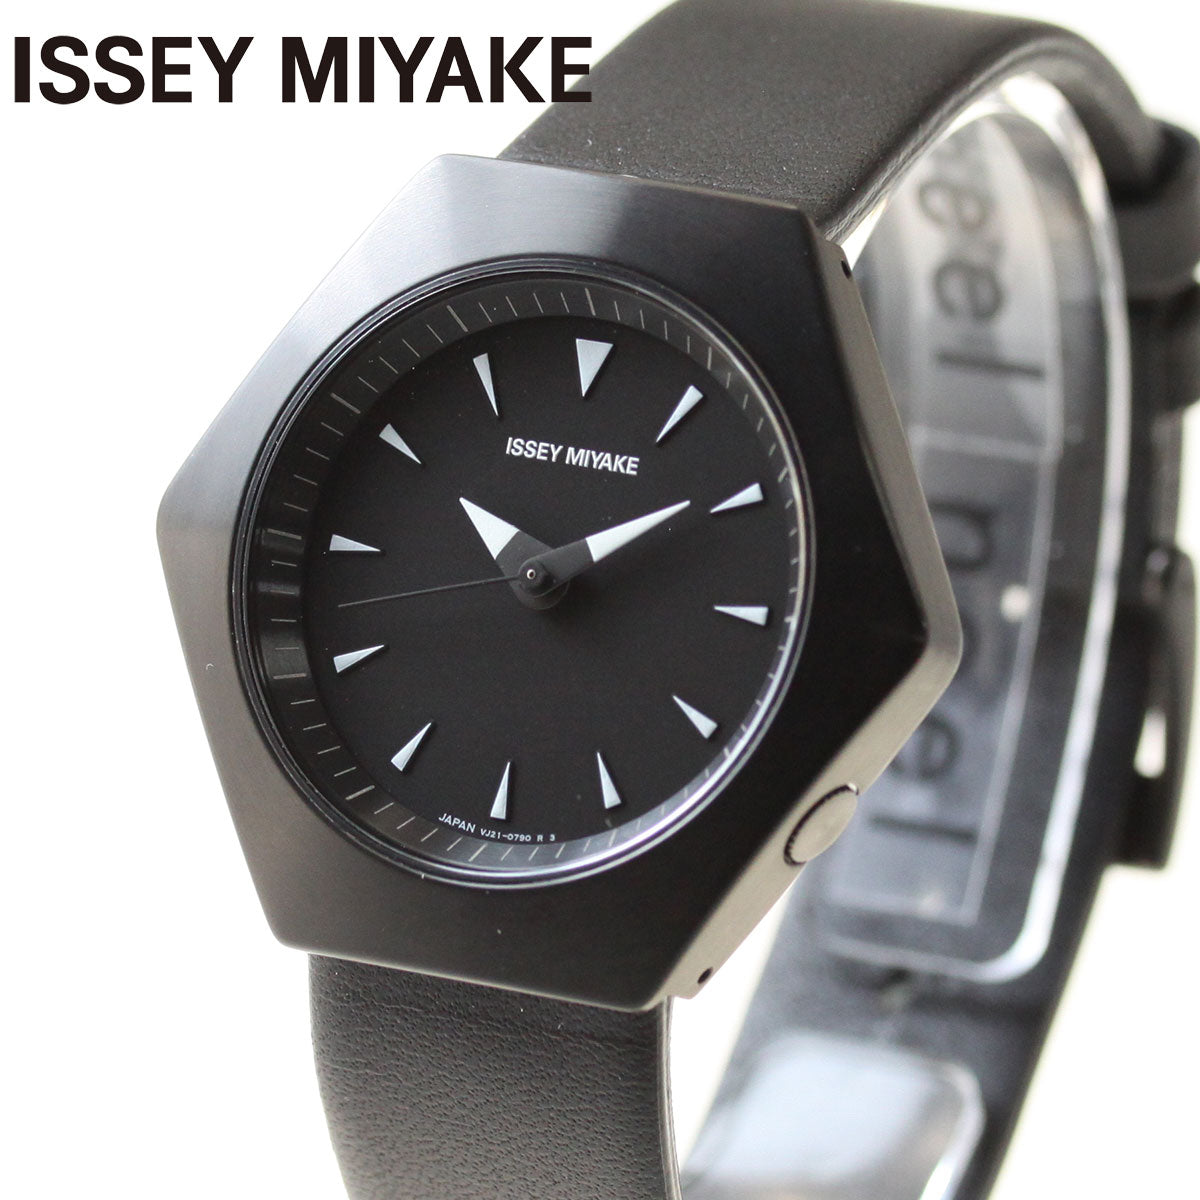 イッセイミヤケ ISSEY MIYAKE 腕時計 メンズ レディース ロク ROKU コンスタンティン・グルチッチ氏 コラボモデル NYAM004